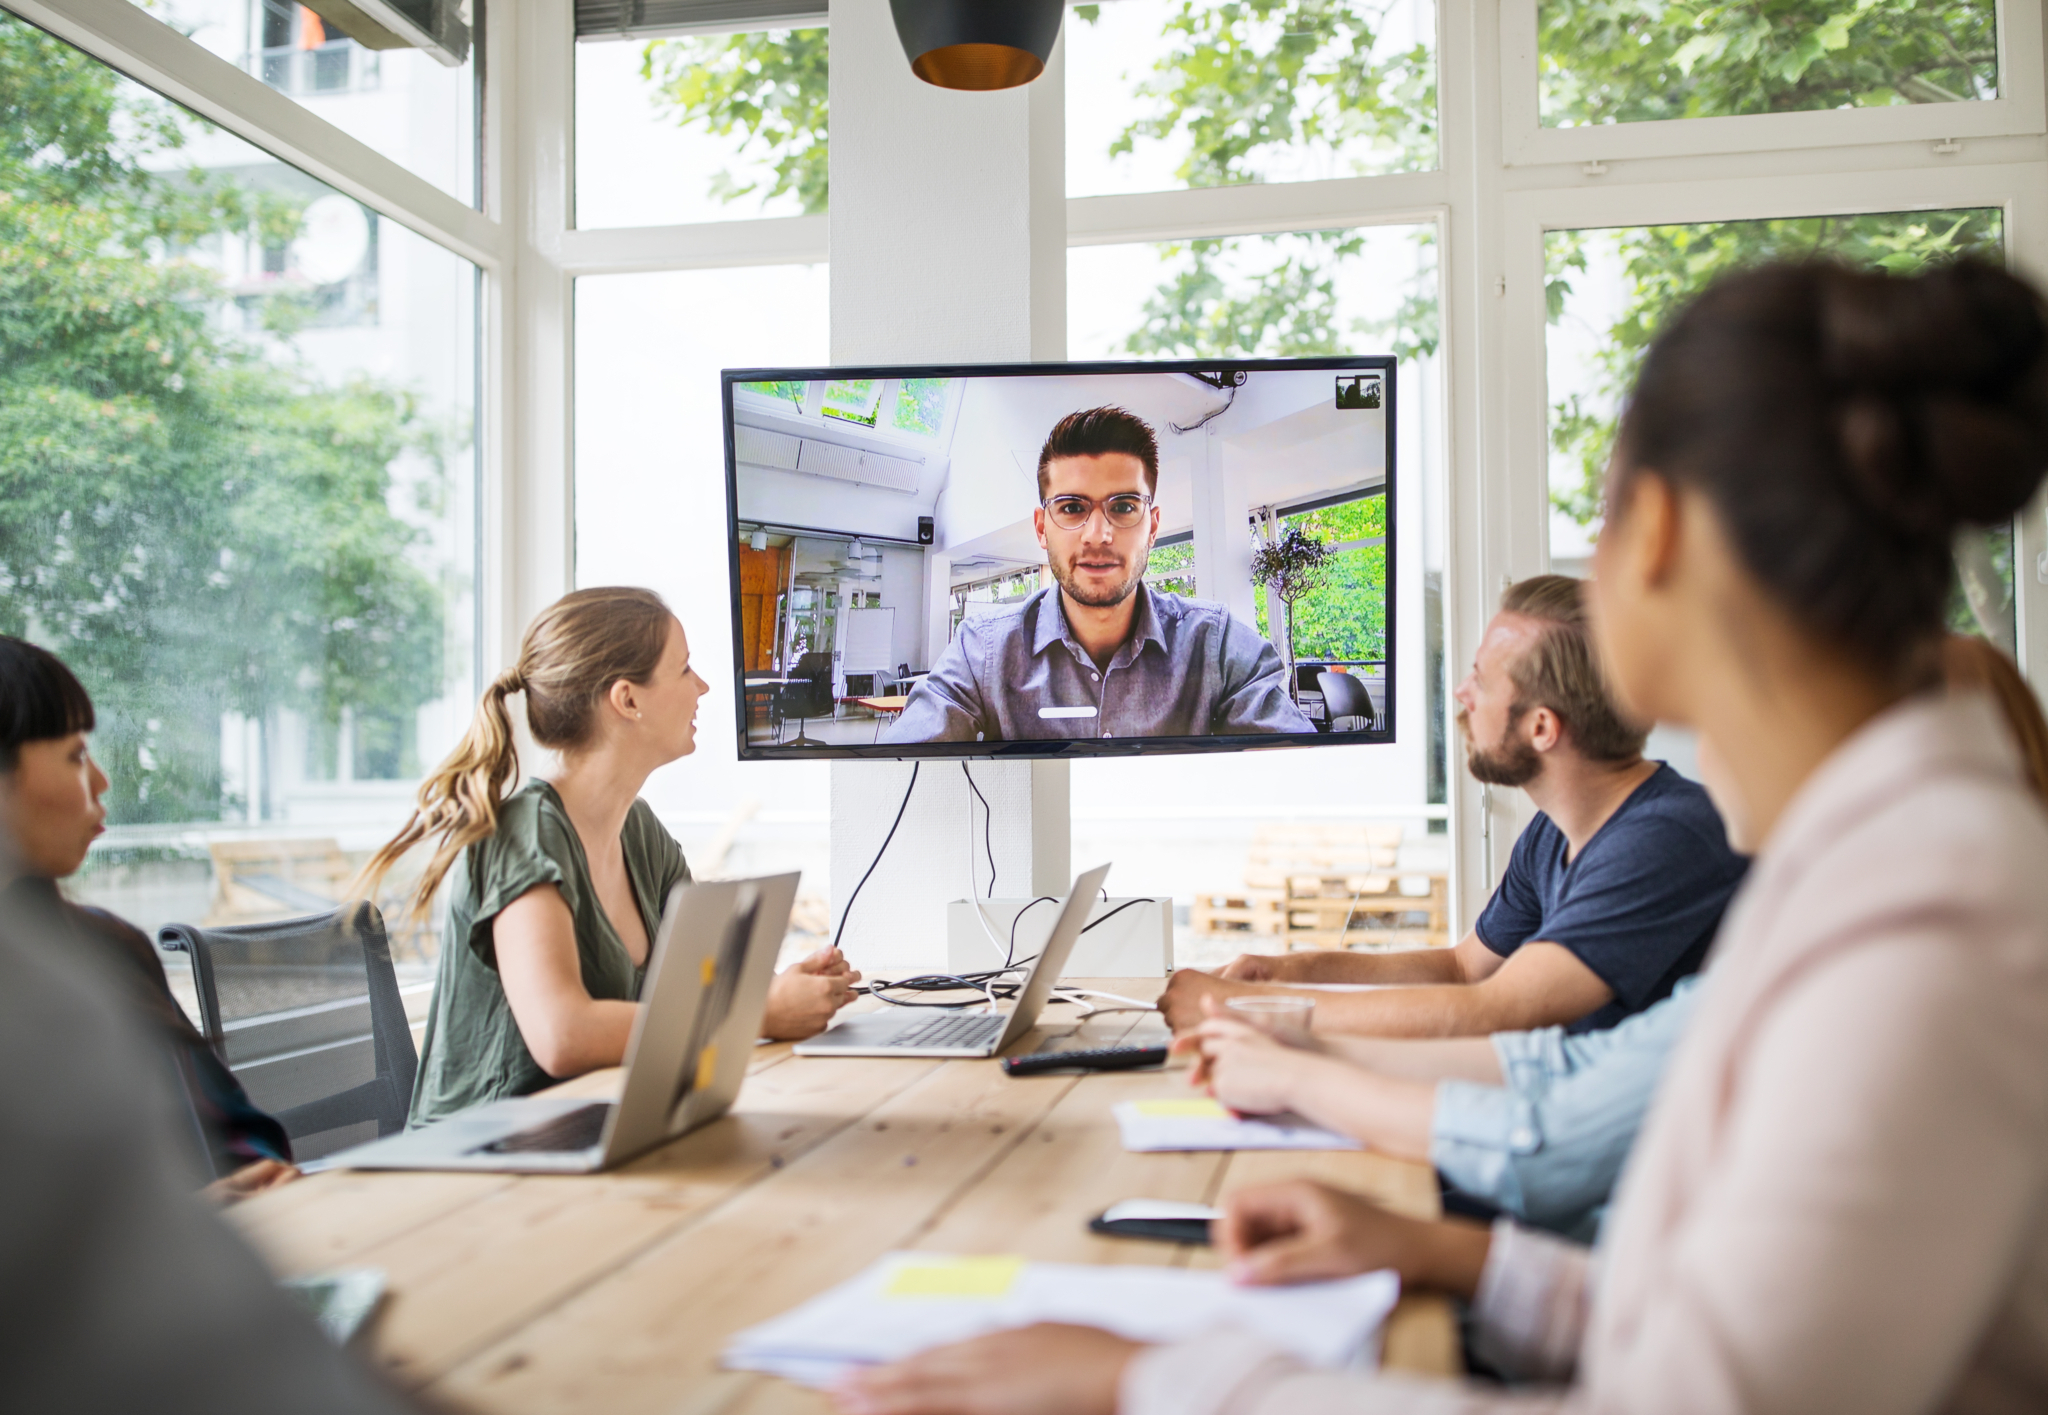 Vier Personen sitzen vor einem Bildschirm und nehmen an einem Online-Workshop teil.